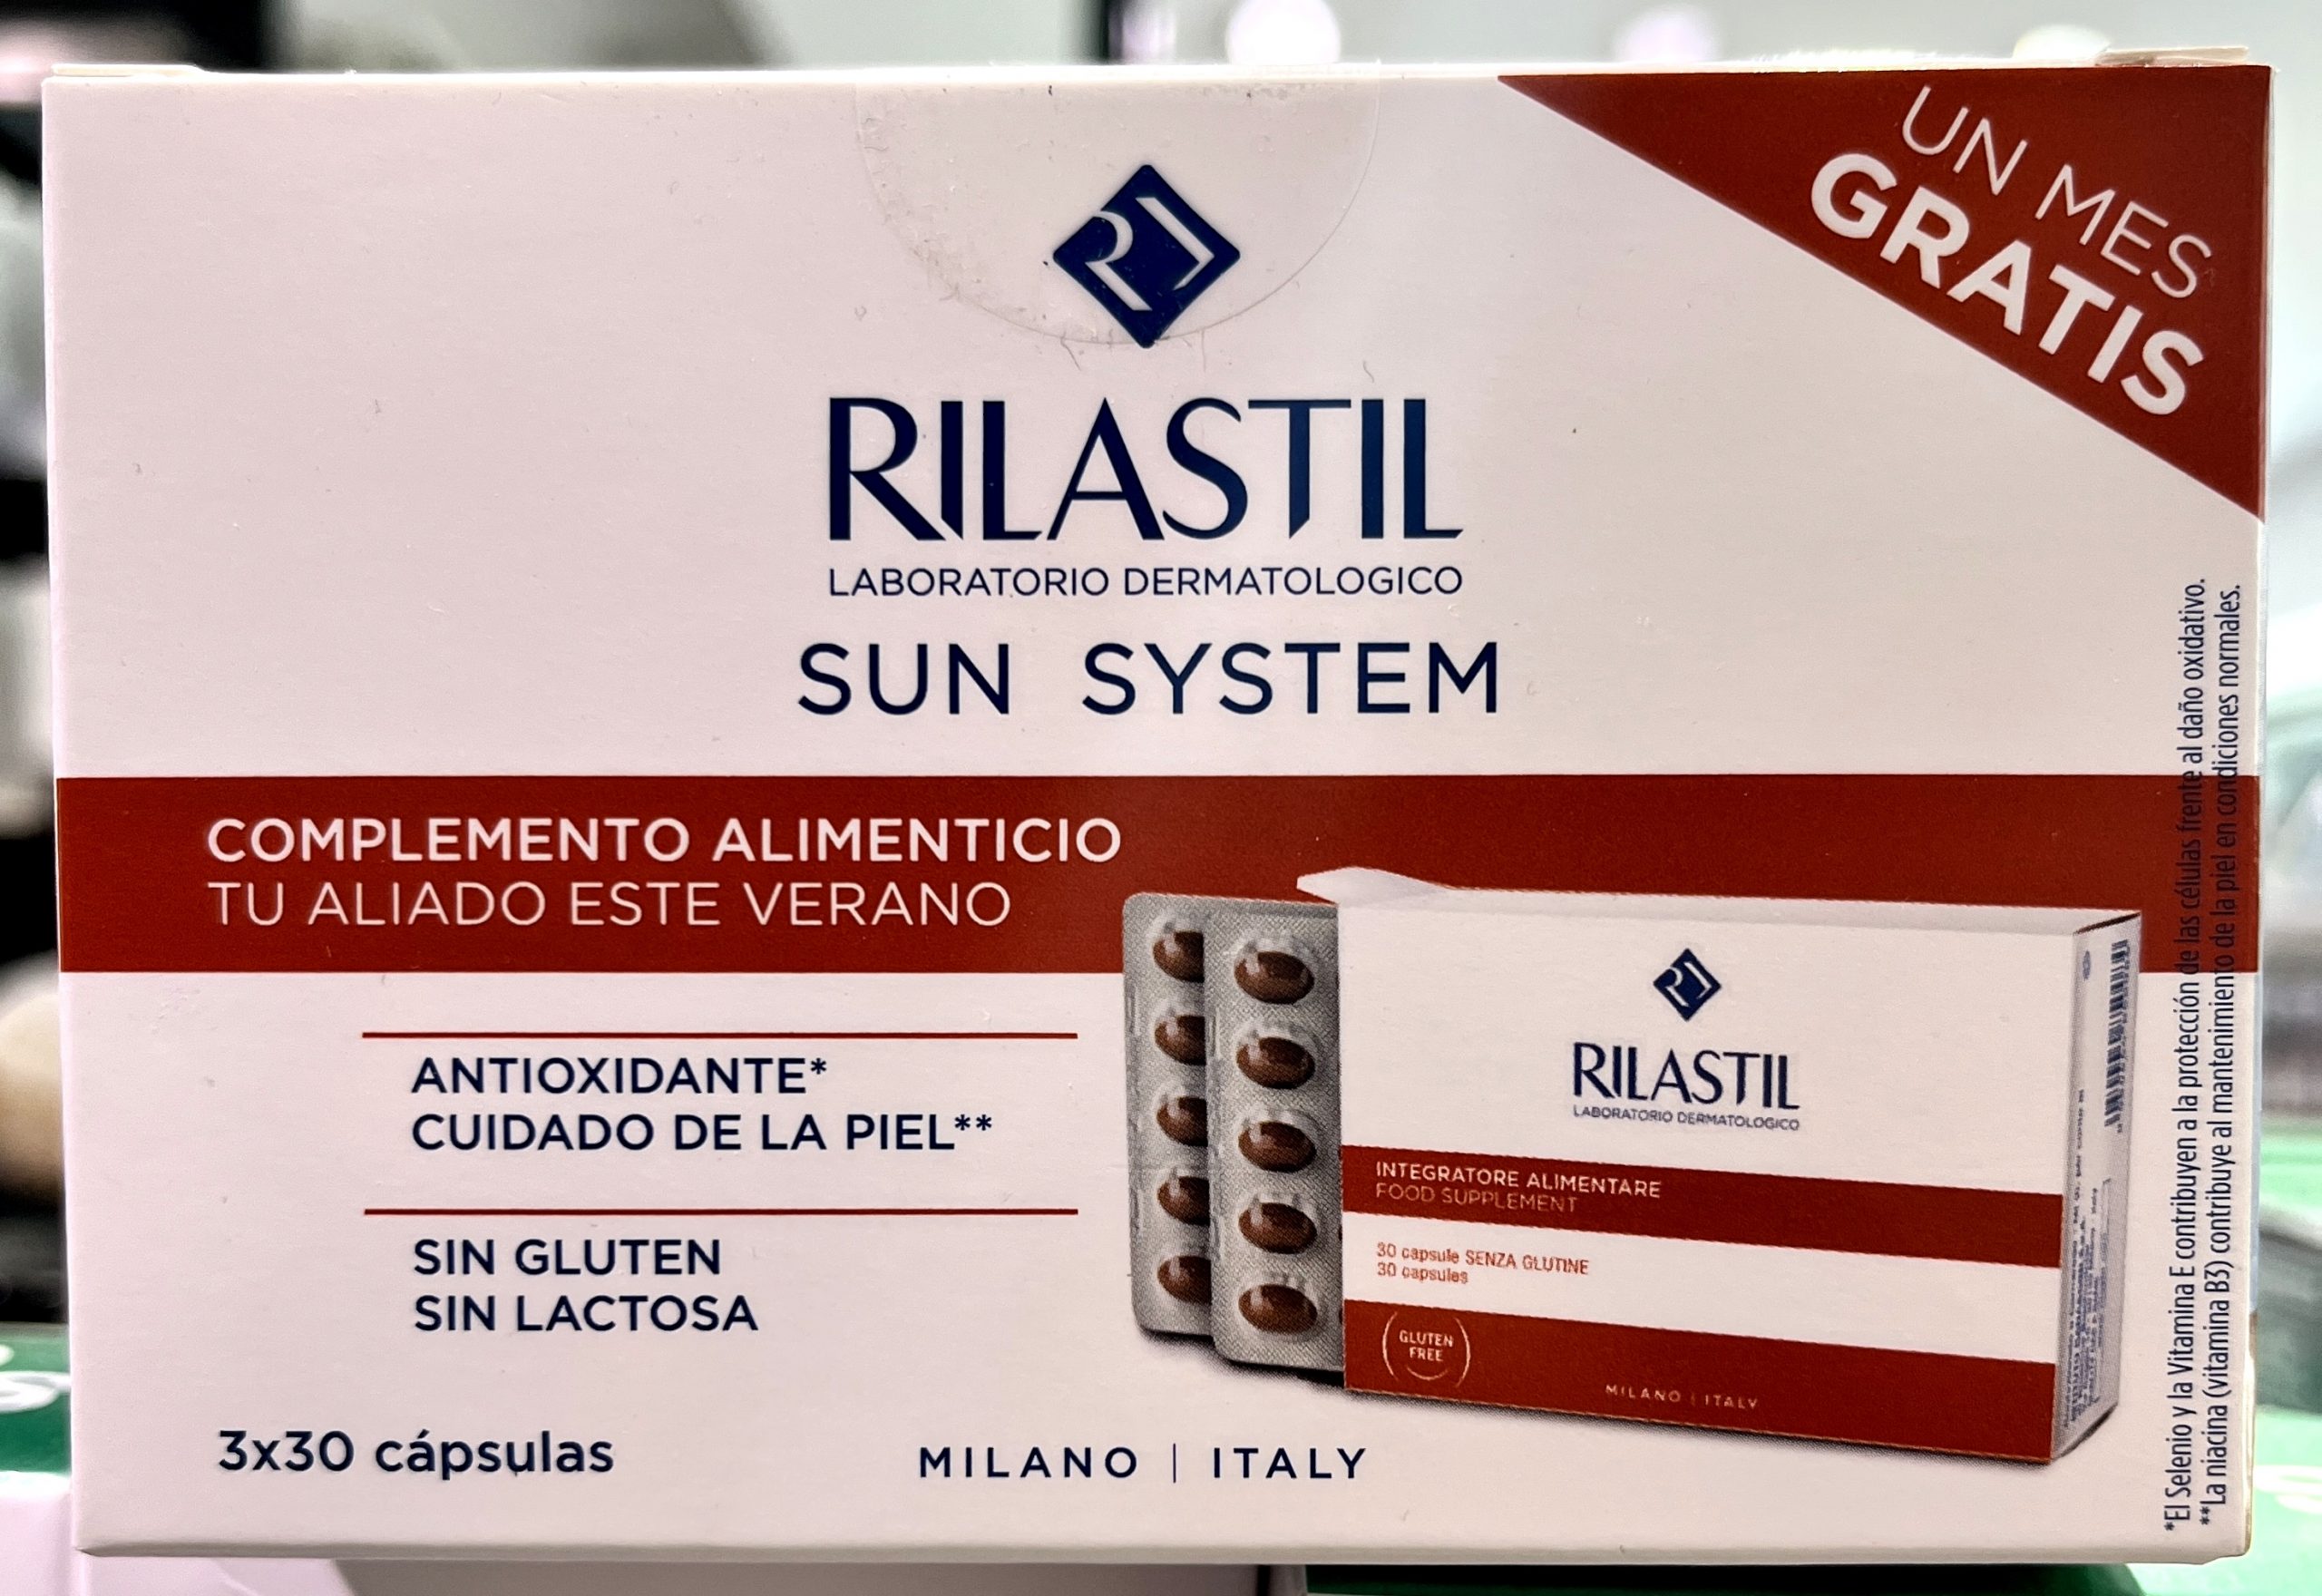 RILASTIL SUN SYSTEM de DERMOFARM CUMLAUDE (RILASTIL). Rilastil Sun System triplo 3X30 cápsulas es un complemento alimenticio con vitaminas B, E y D, Tirosina, Selenio y Luteína, con Aceite de Borraja y Extracto de Semillas de Uva. Tiene acción antioxidante y protege a la piel de los daños ocasionados por la radiación solar y promueve la producción de Melanina.